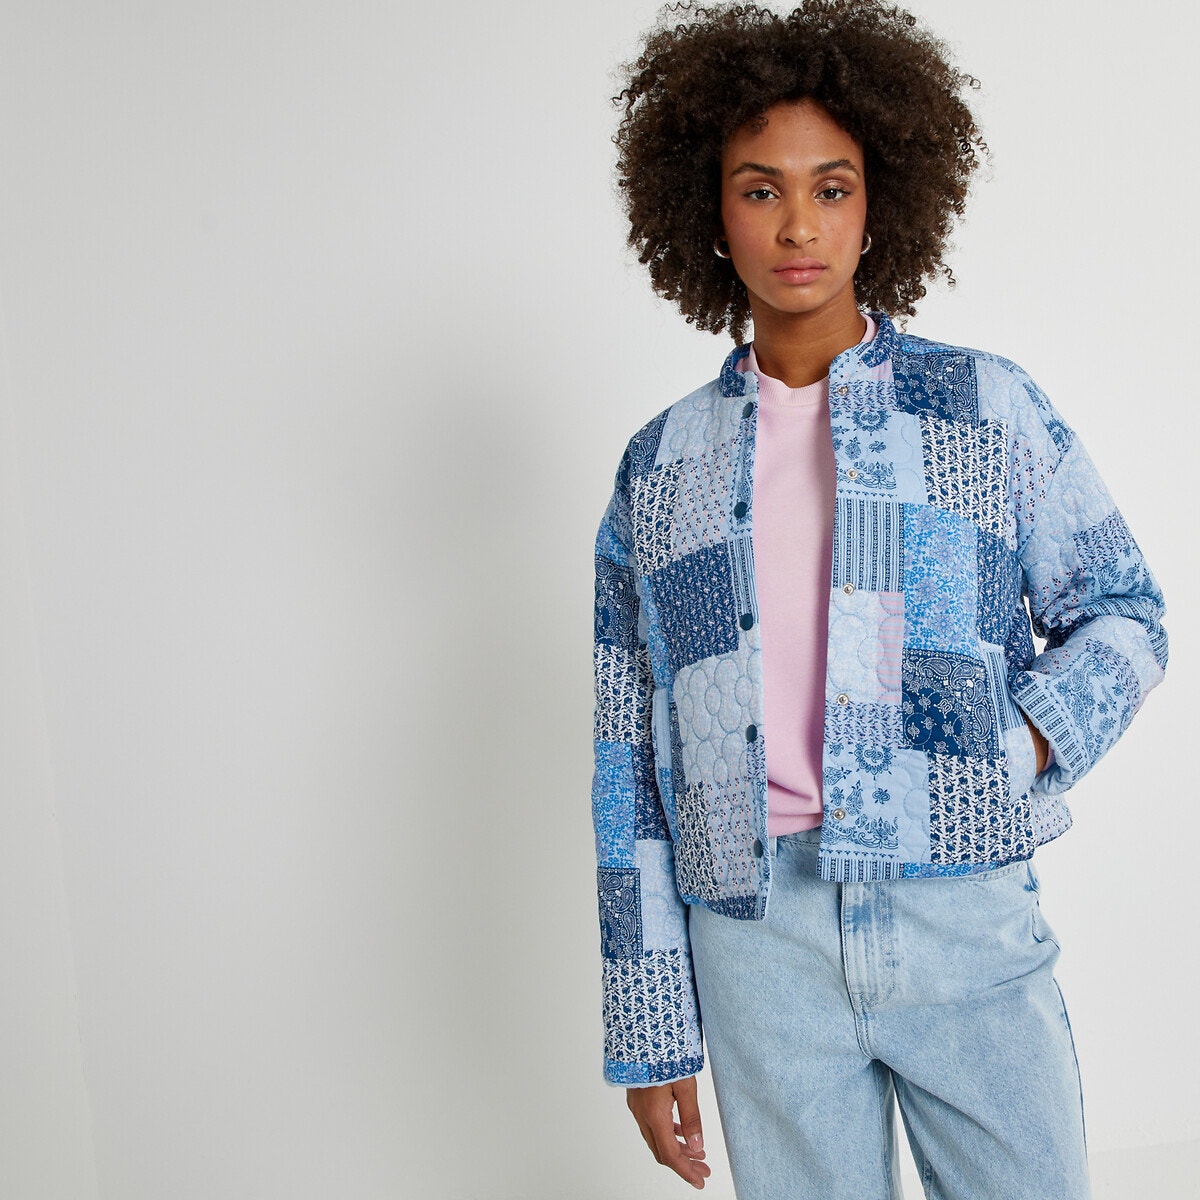 Μόδα > Γυναικεία > Ρούχα > Σακάκια, μπουφάν Κοντό σακάκι με μοτίβο patchwork